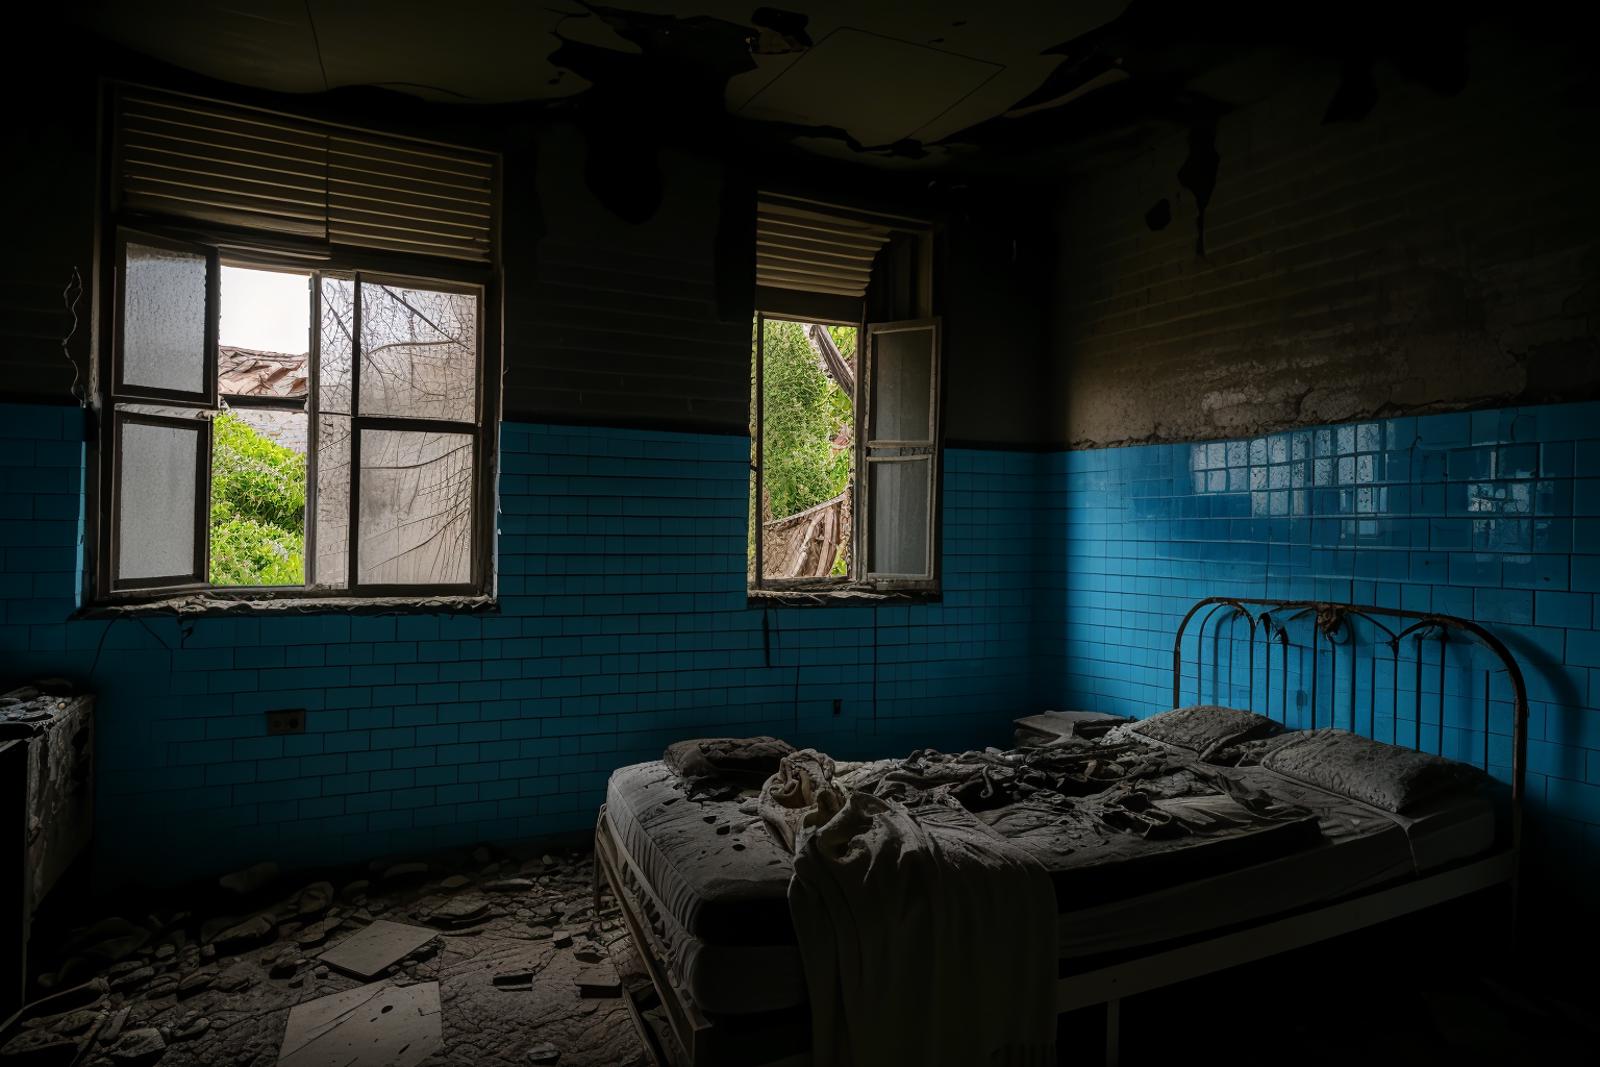 abandoned hospital image by ruanyi